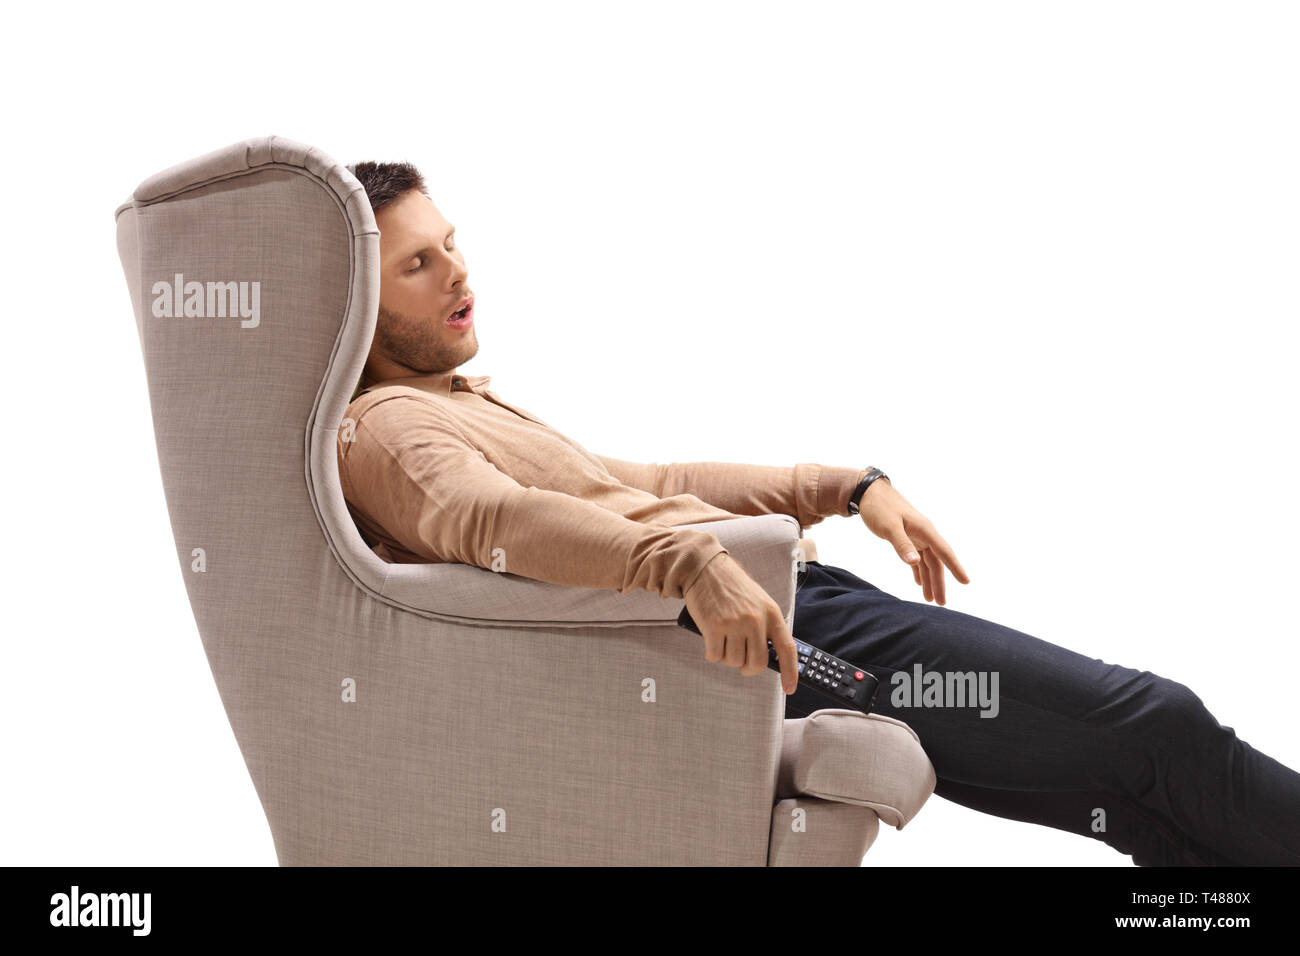 Jeune mec avec une télécommande de dormir dans un fauteuil isolé sur fond blanc Banque D'Images